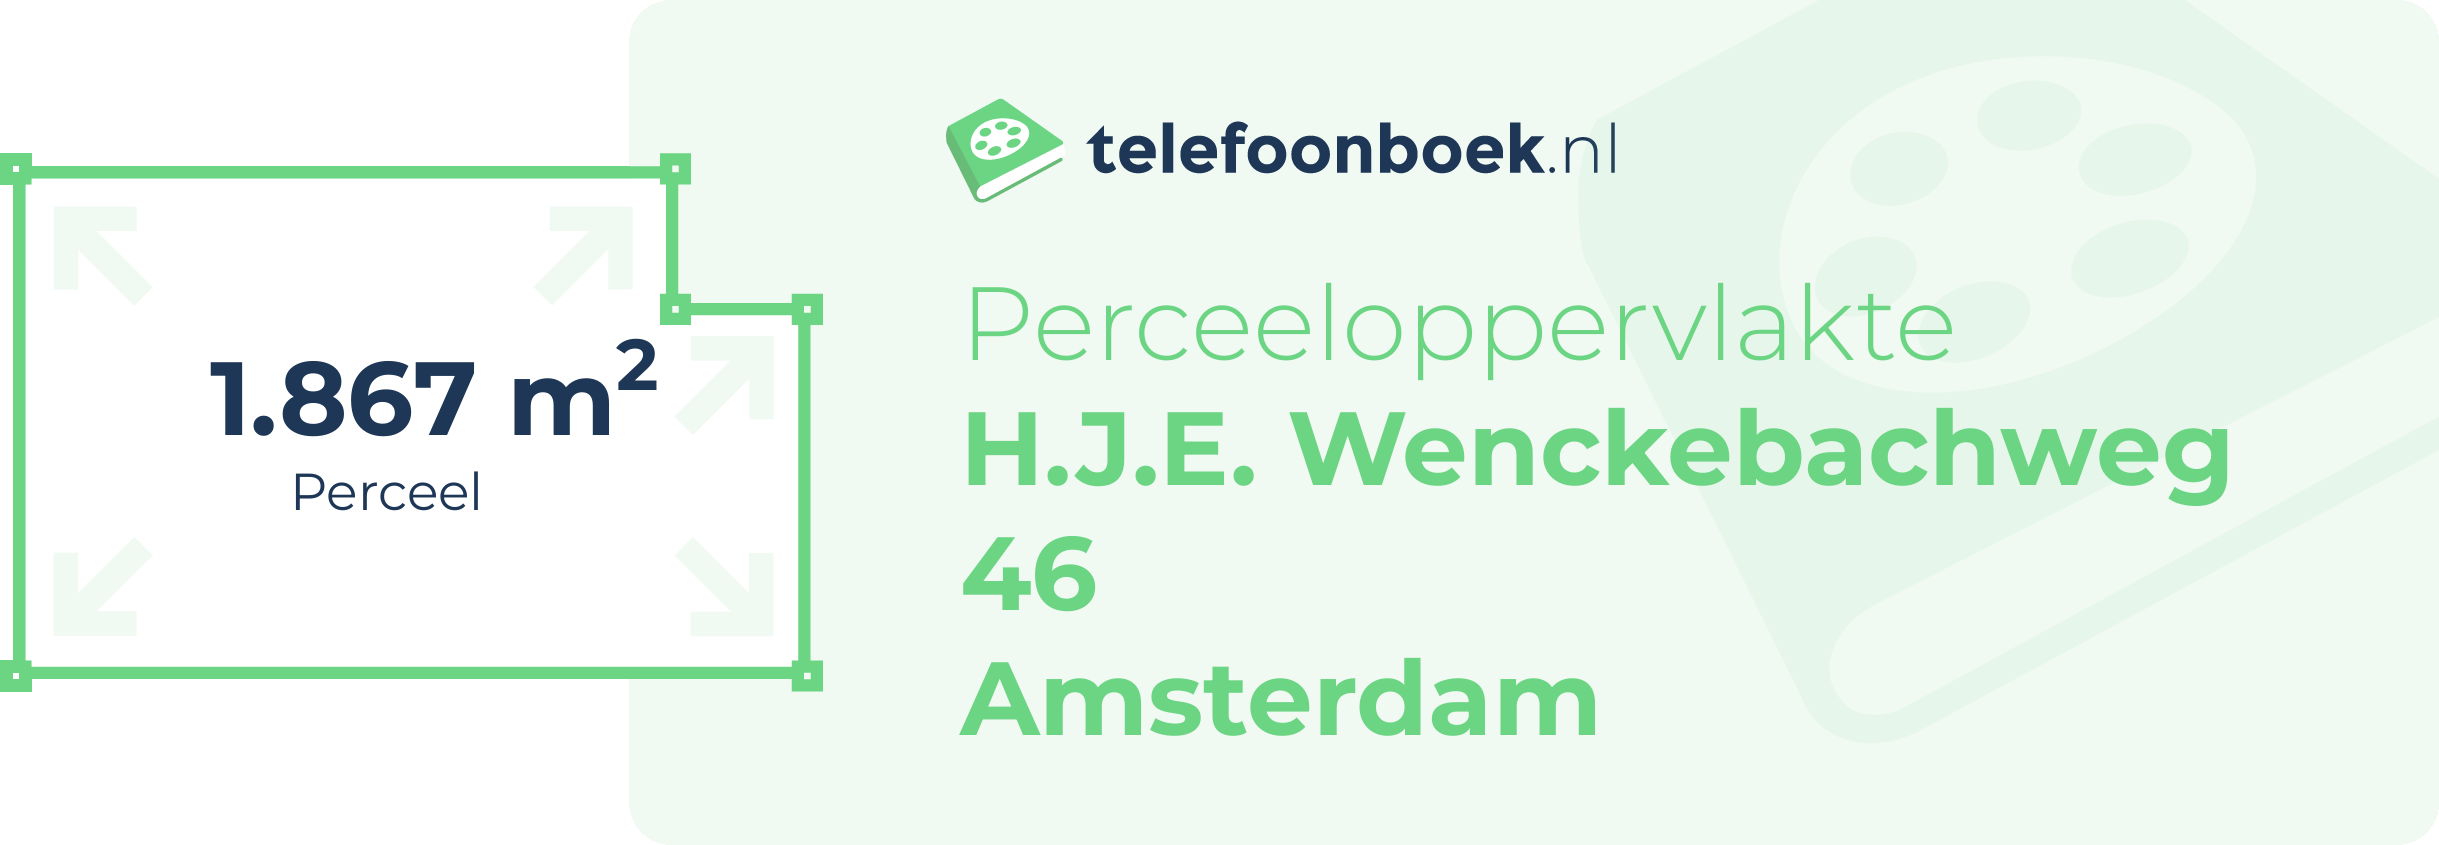 Perceeloppervlakte H.J.E. Wenckebachweg 46 Amsterdam